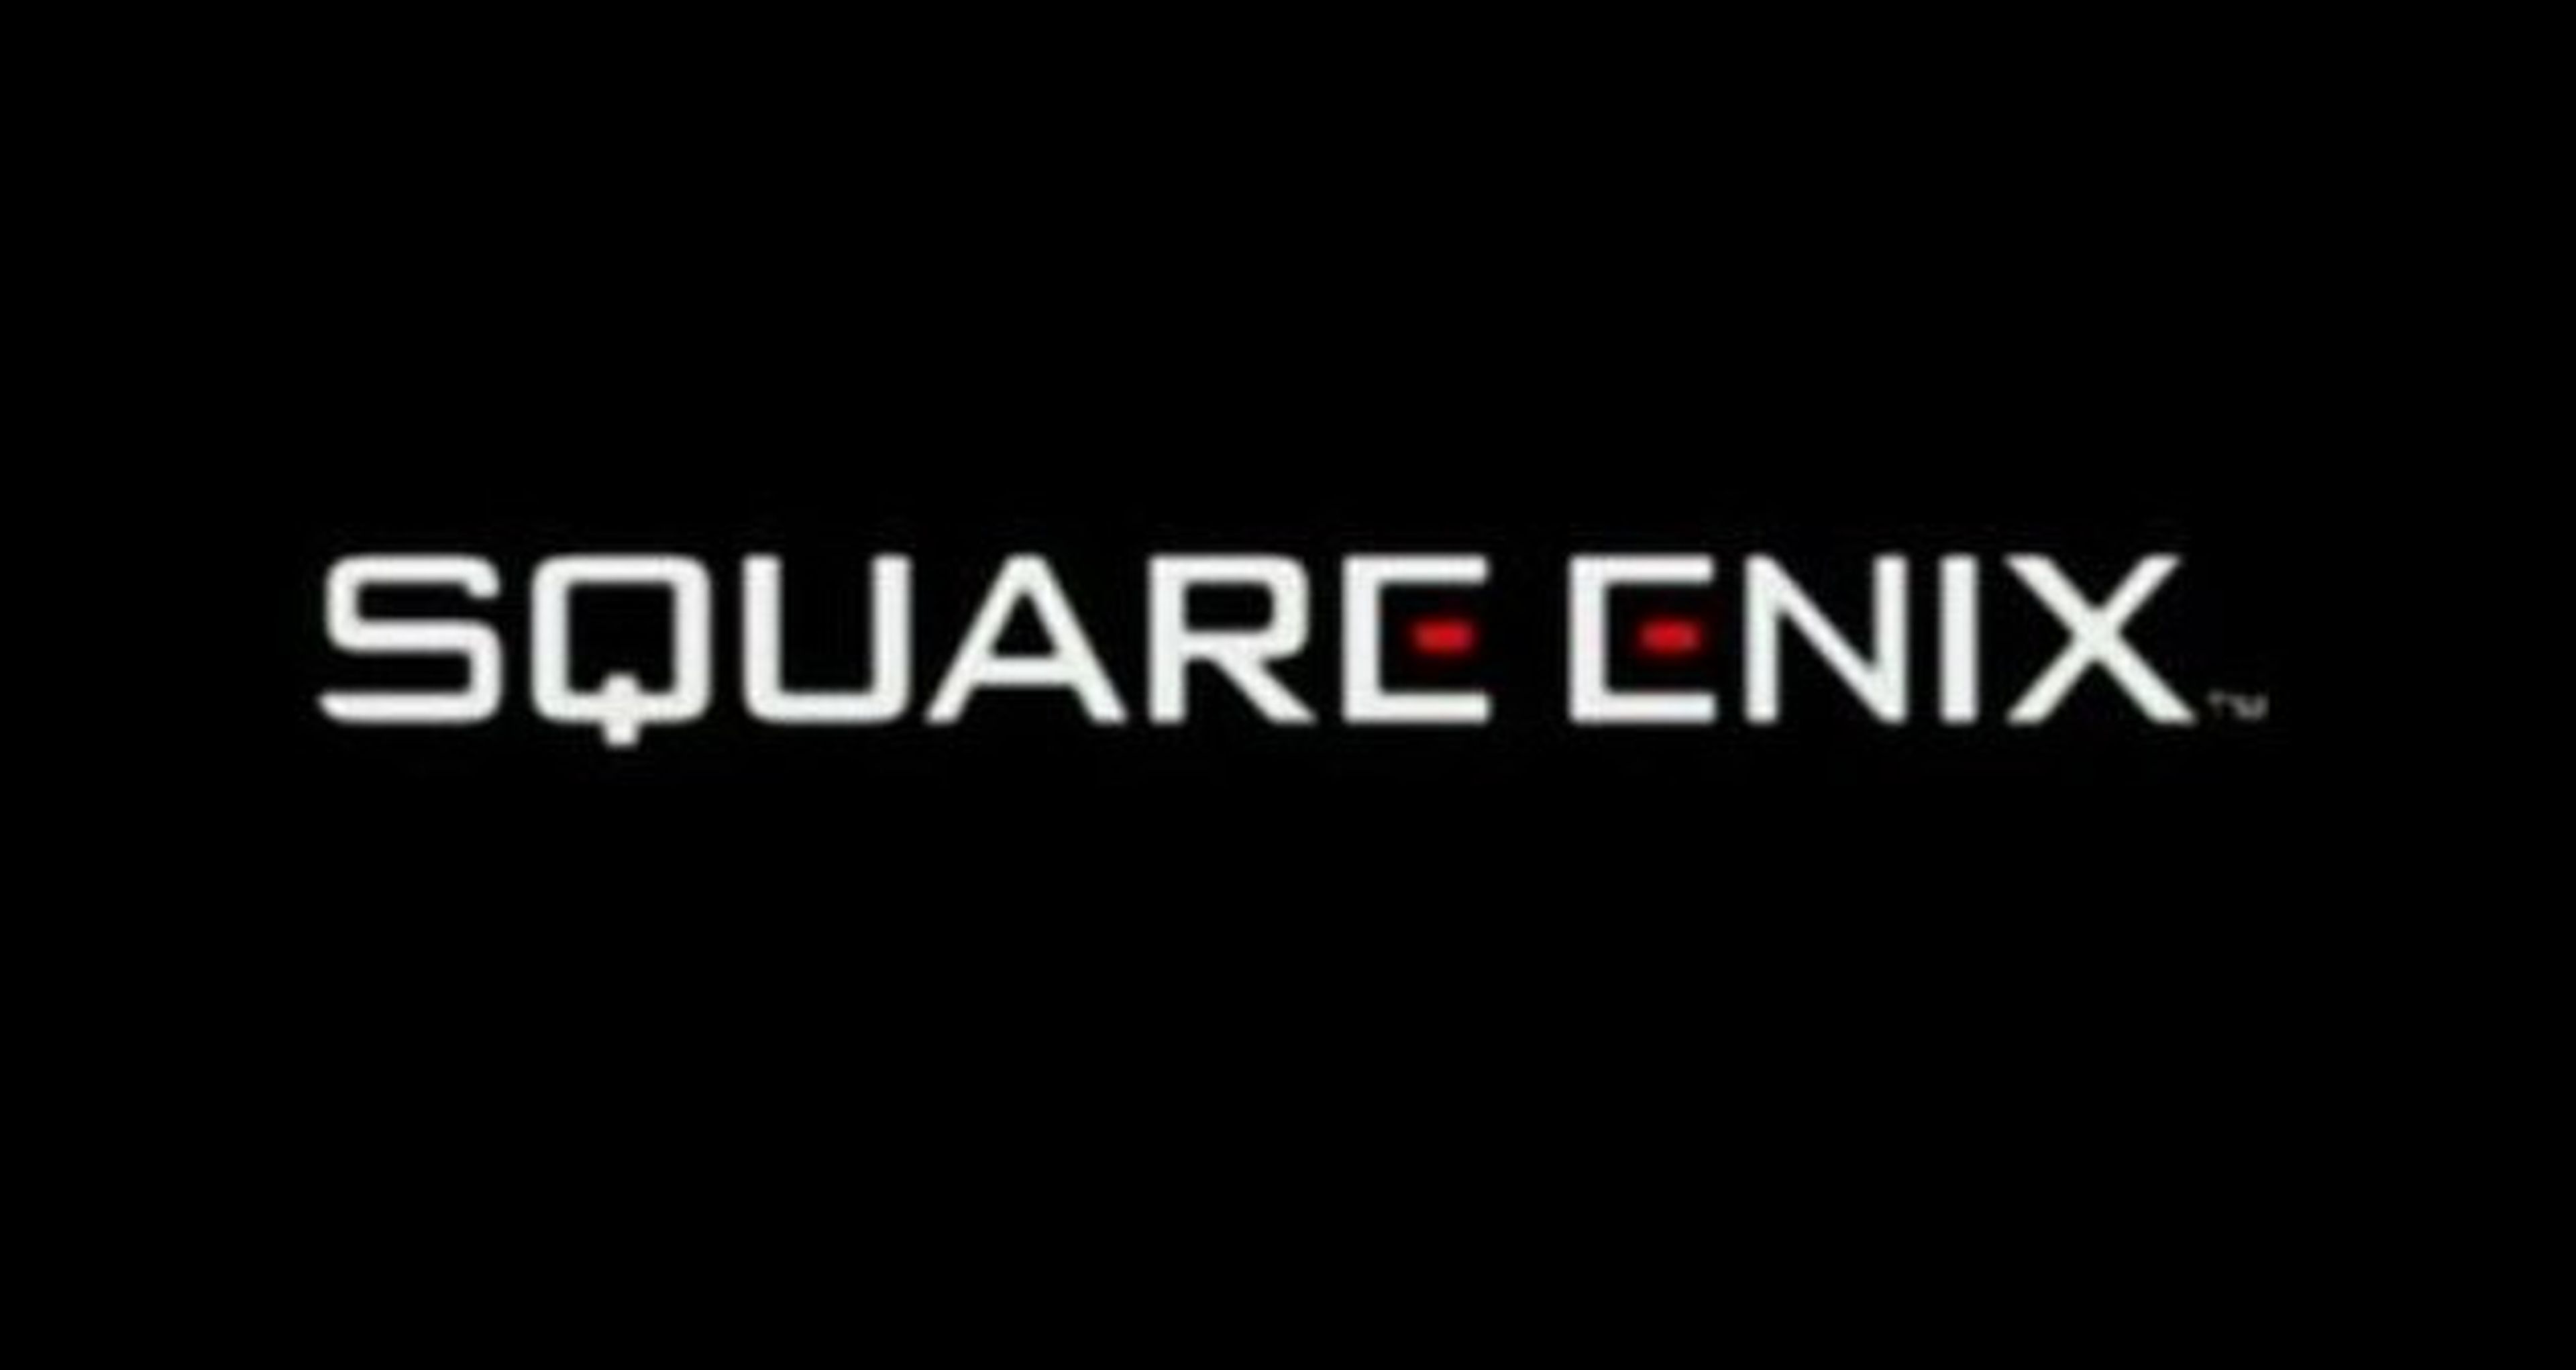 Motivos del enfoque de Square Enix en remakes y smartphones